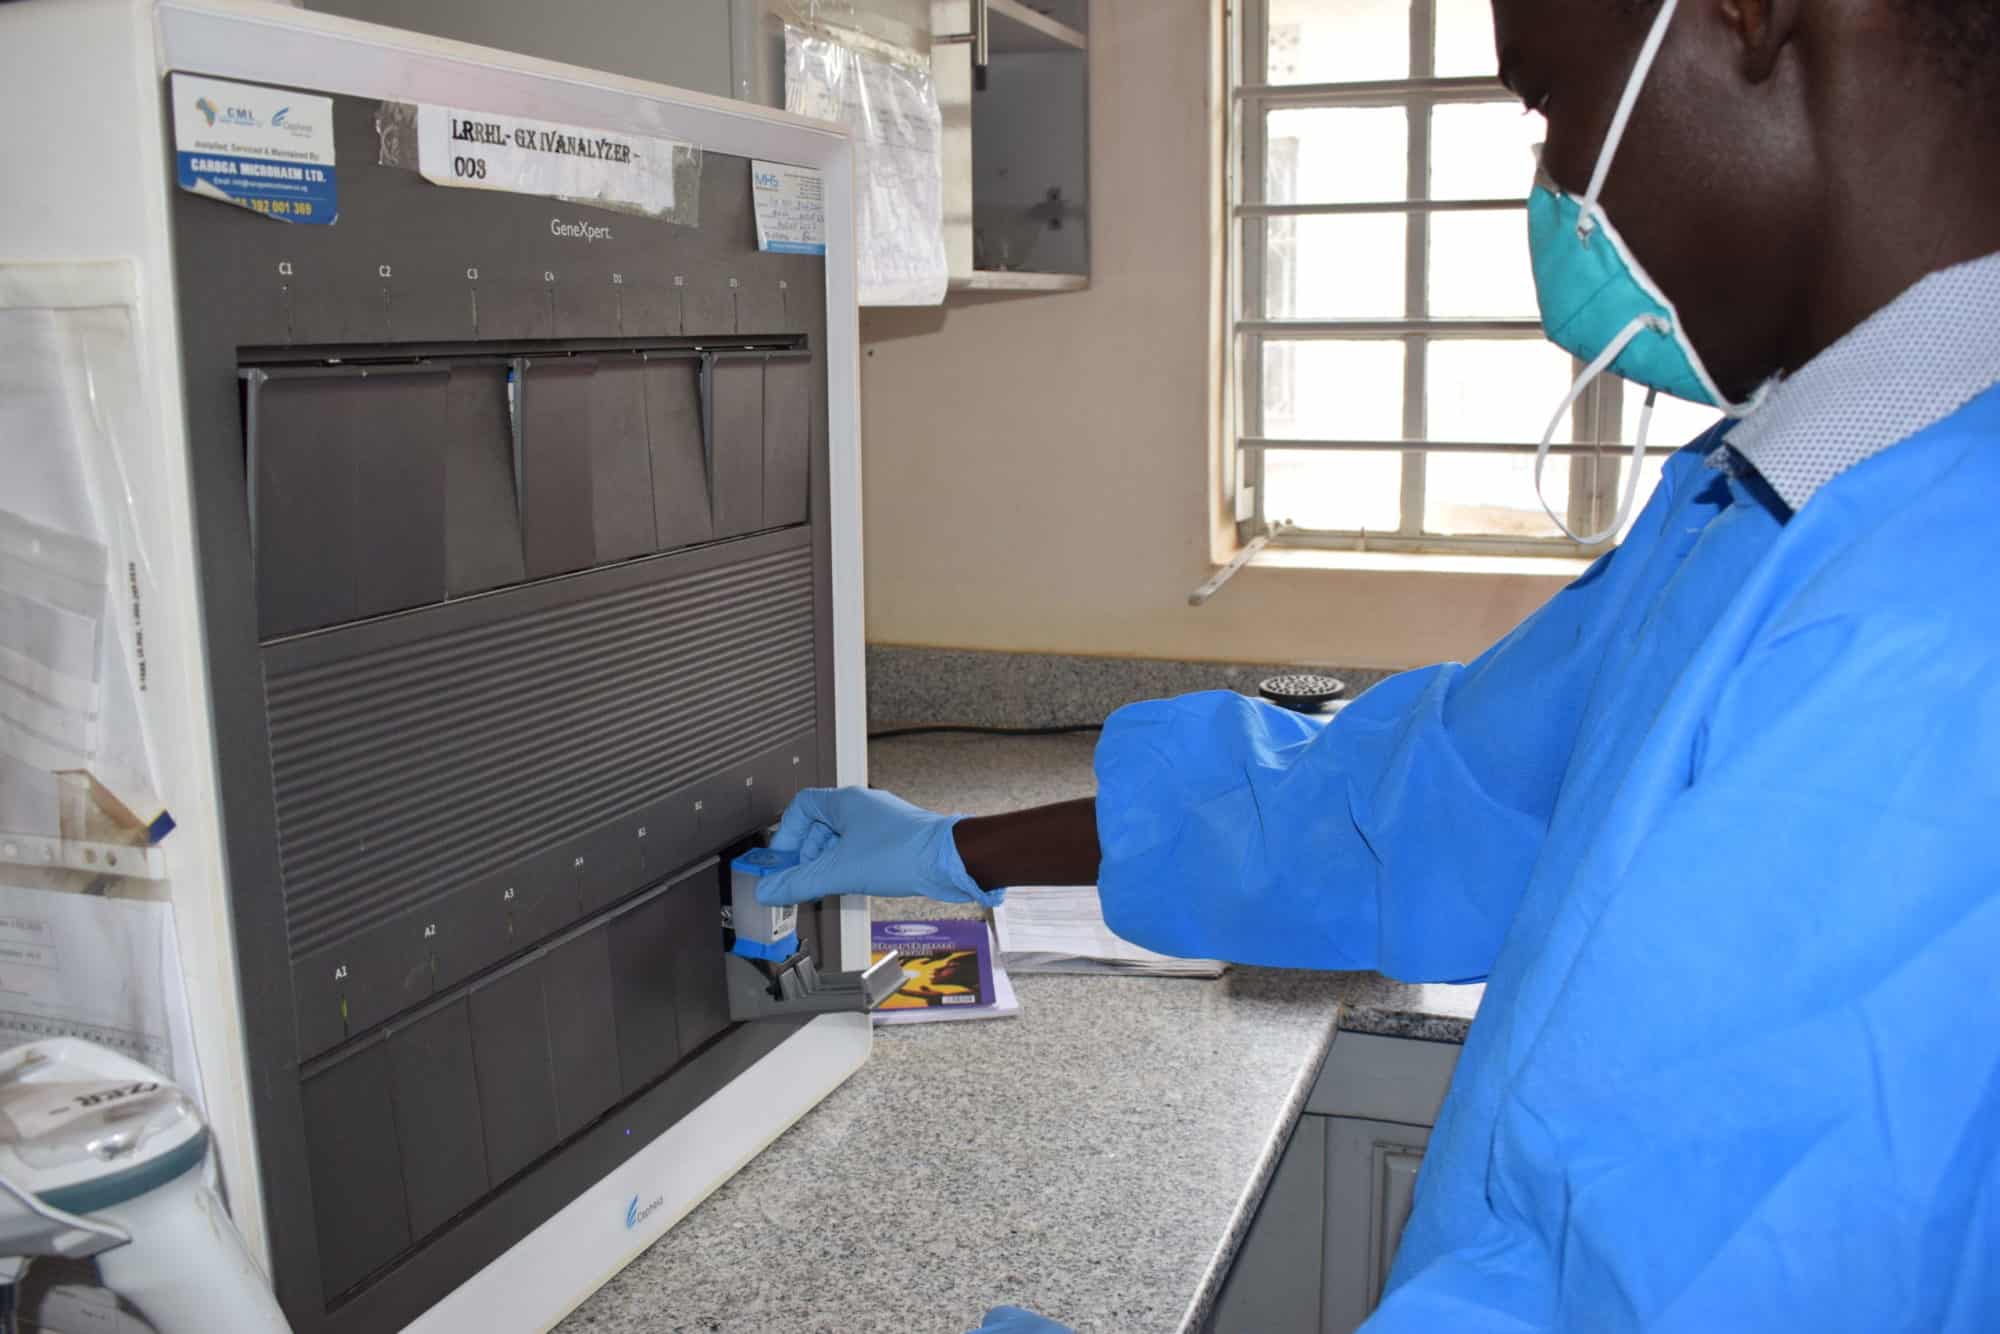 Accreditation is a “Dream Come True” for Laboratory in Northern Uganda